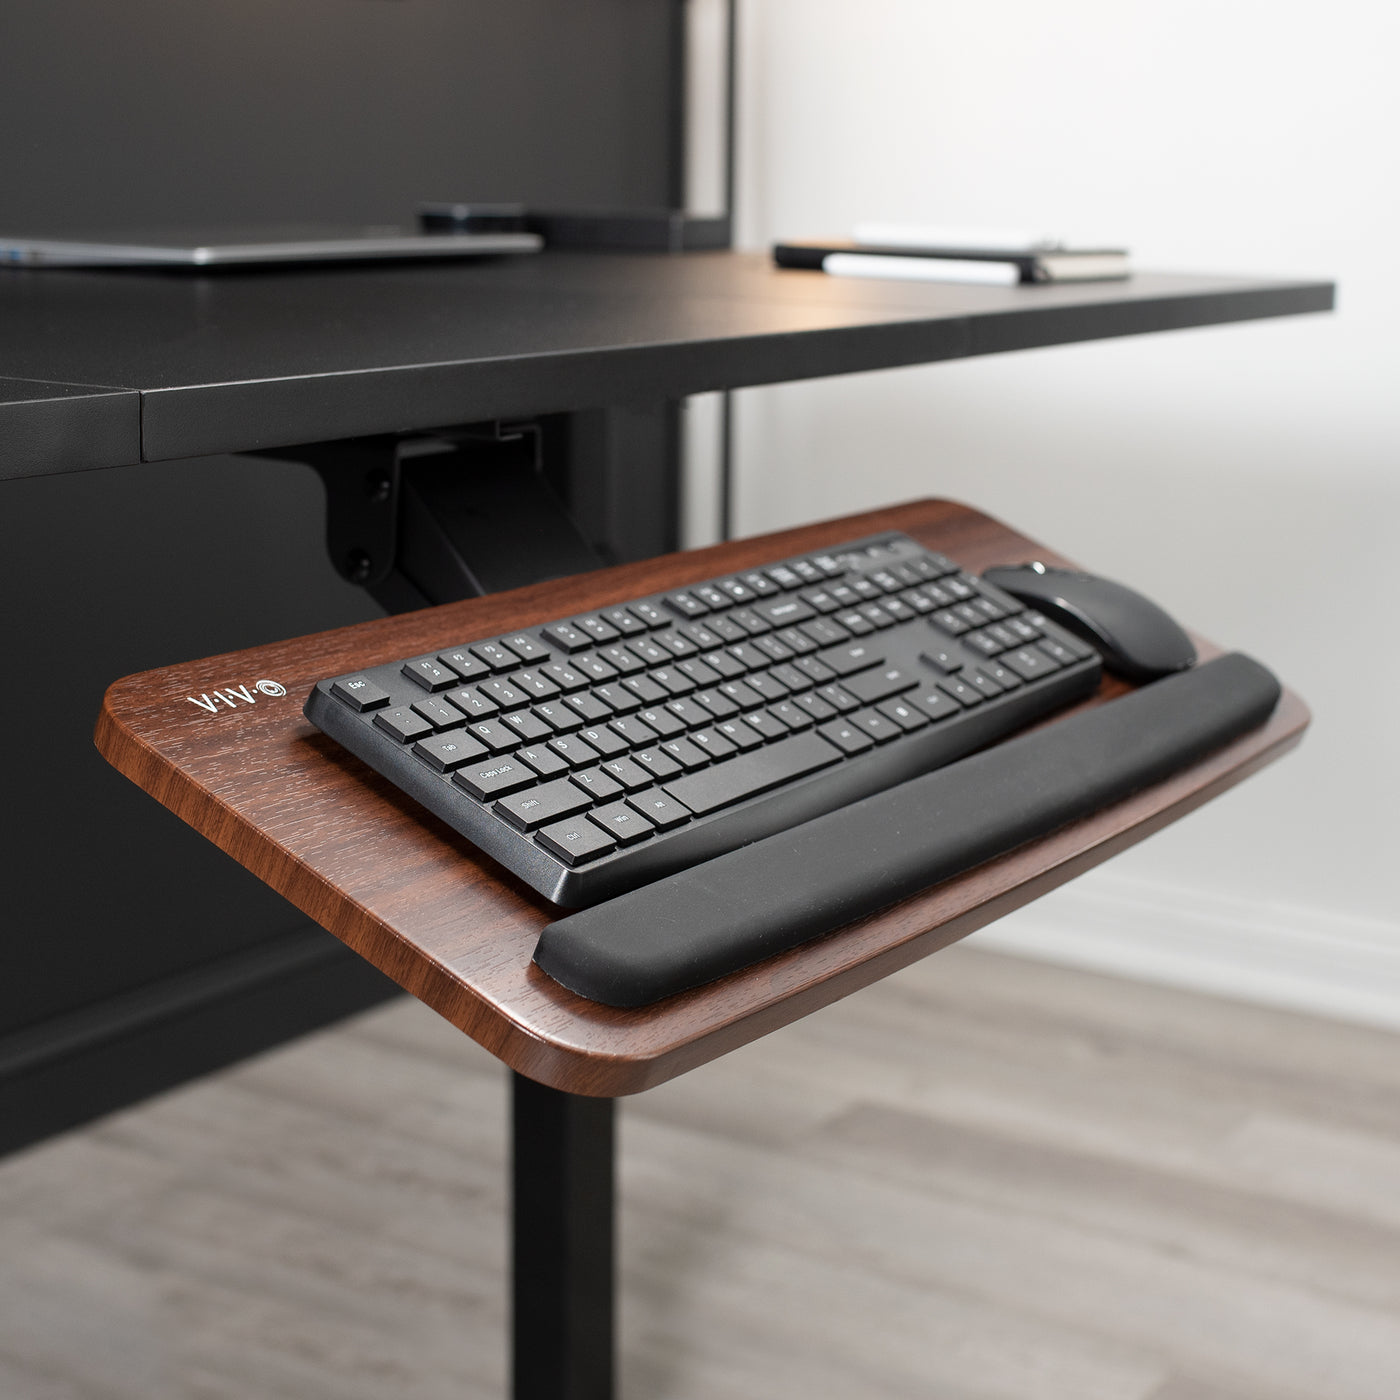 Ergonomic under desk keyboard tray mount attachment.